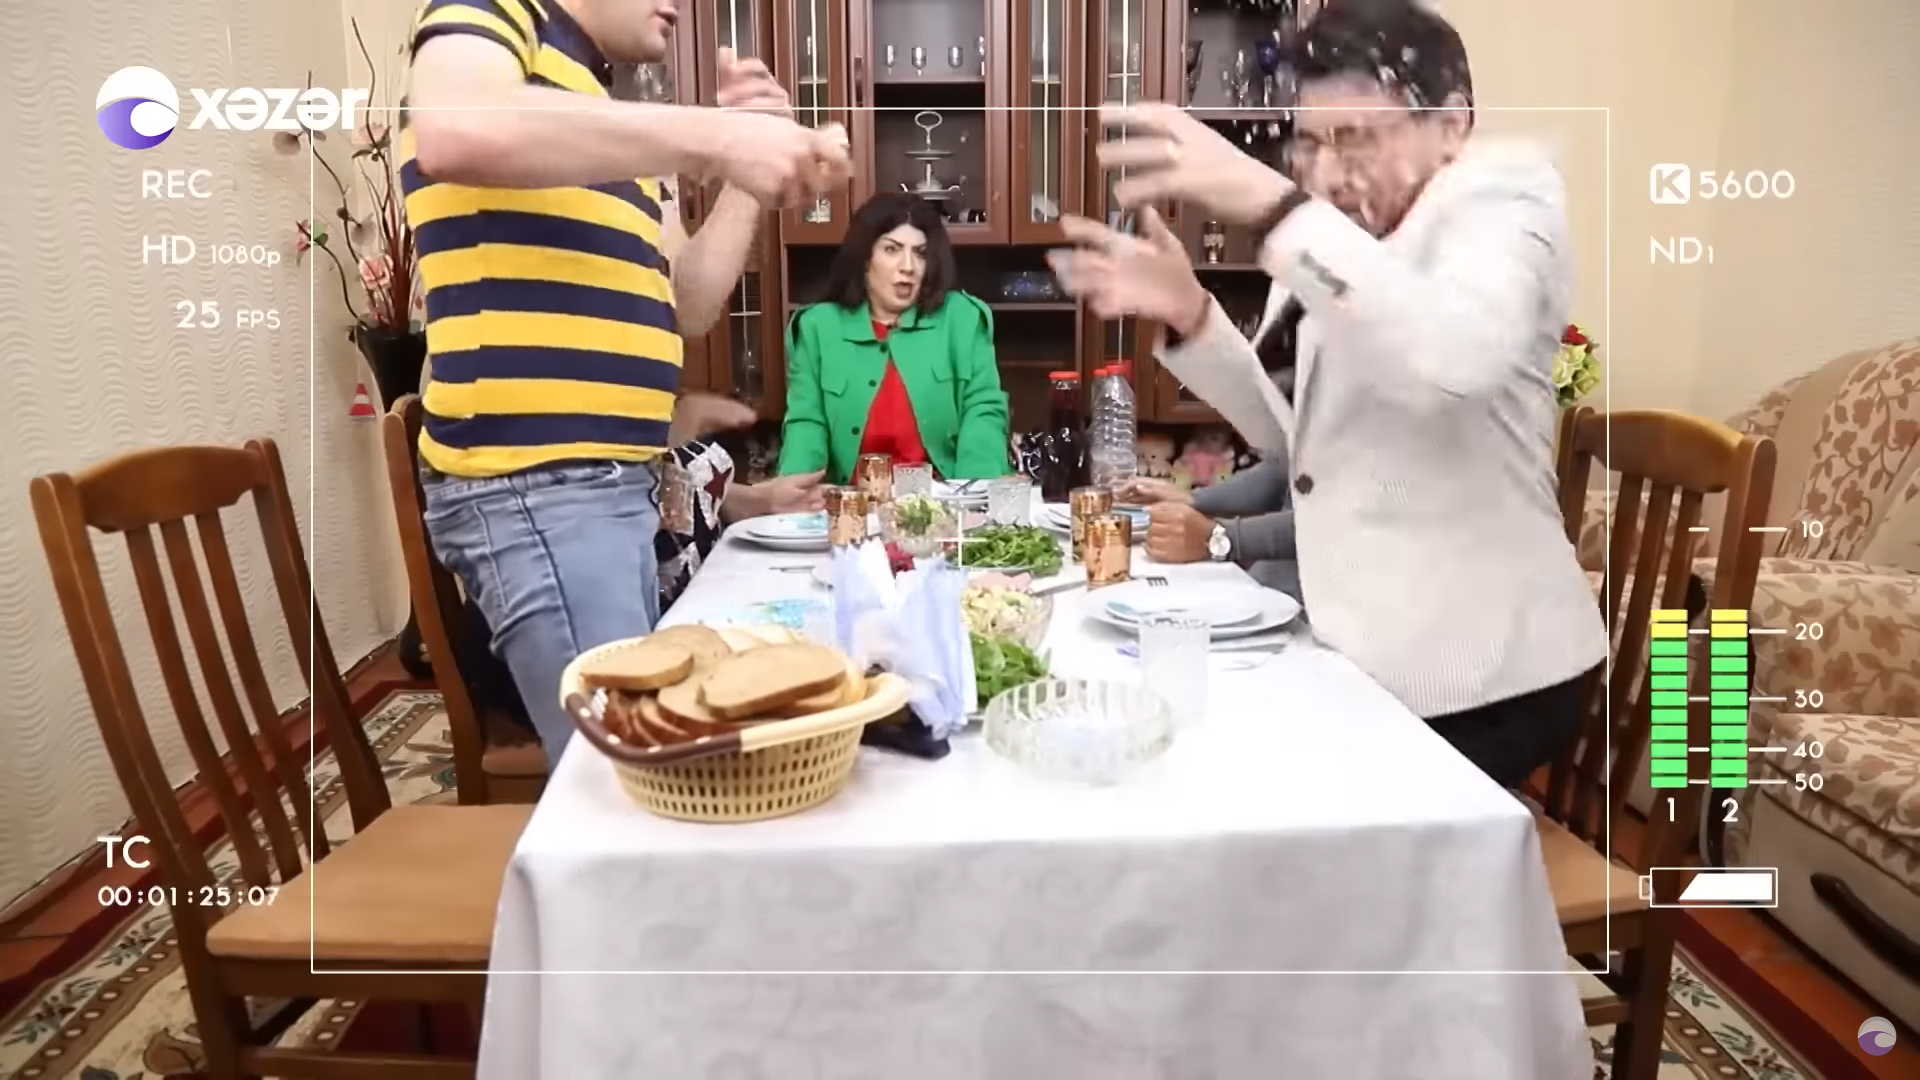 В гостя плеснули водой в эфире азербайджанского ТВ - ВИДЕО